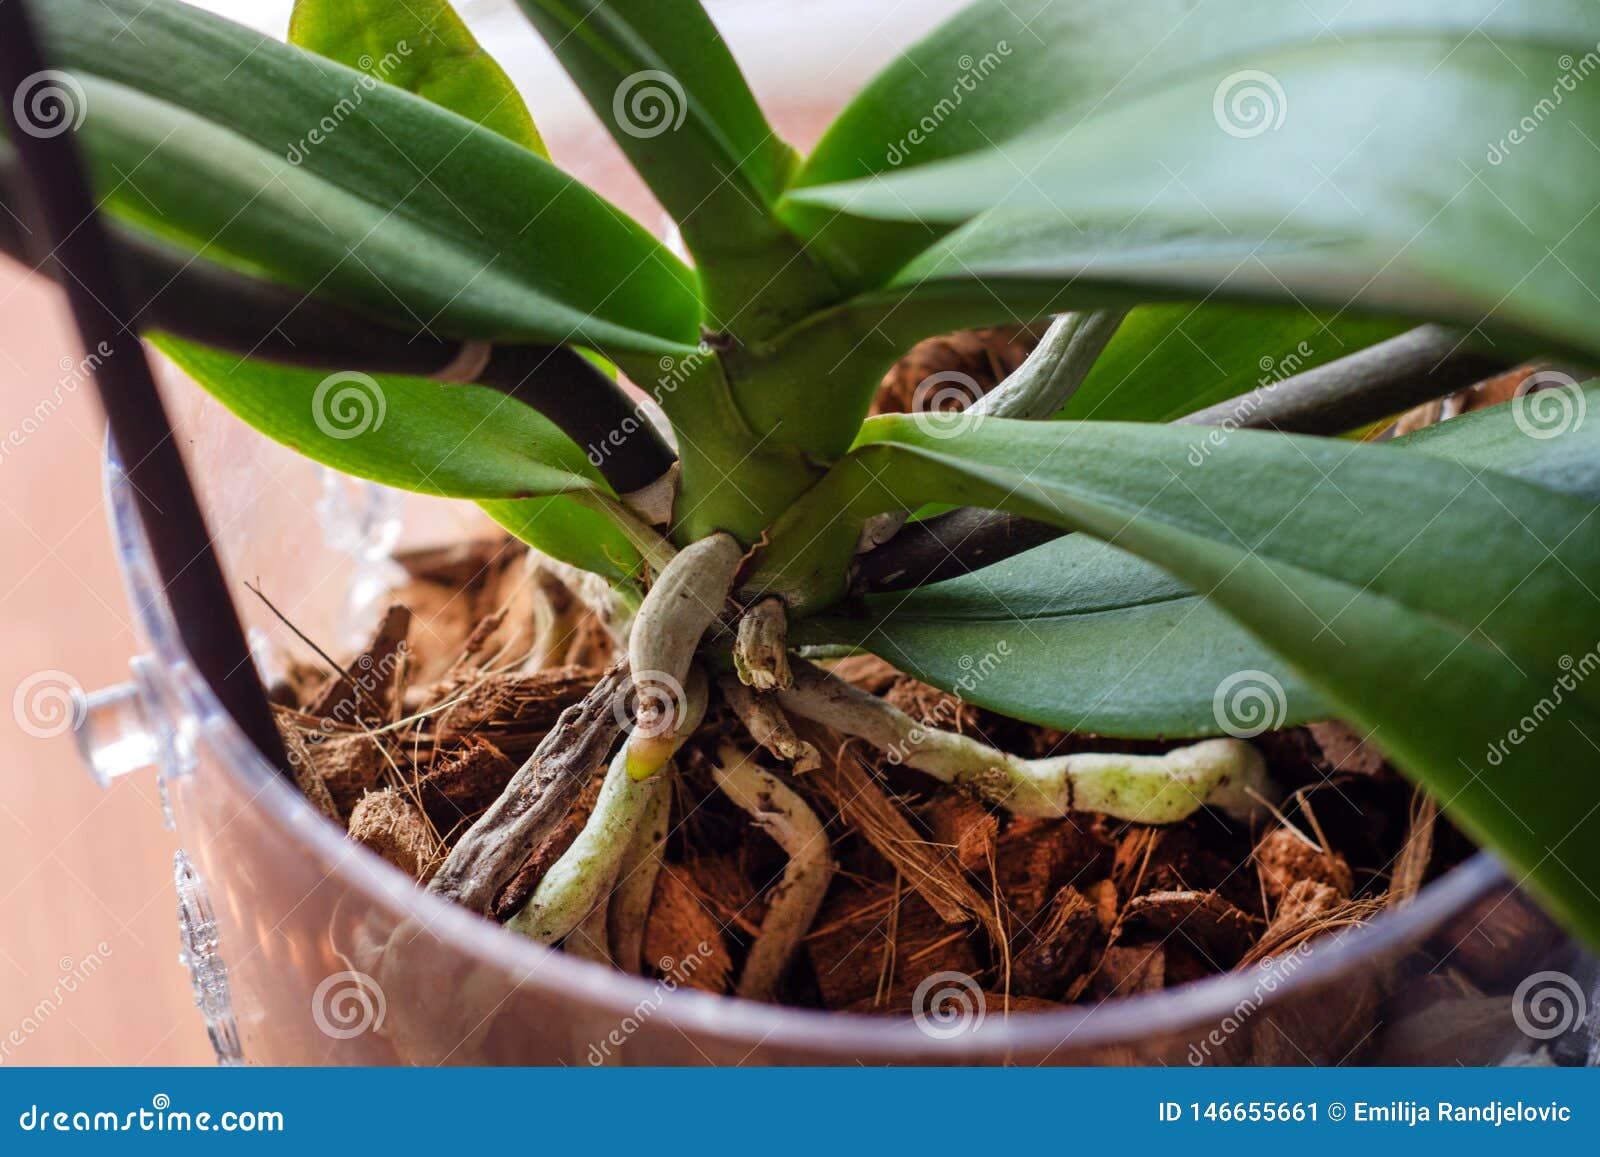 Raíces De La Orquídea Del Phalaenopsis En Maceta Con El Substrato Y Las  Hojas Verdes En Casa Imagen de archivo - Imagen de agricultura, corteza:  146655661